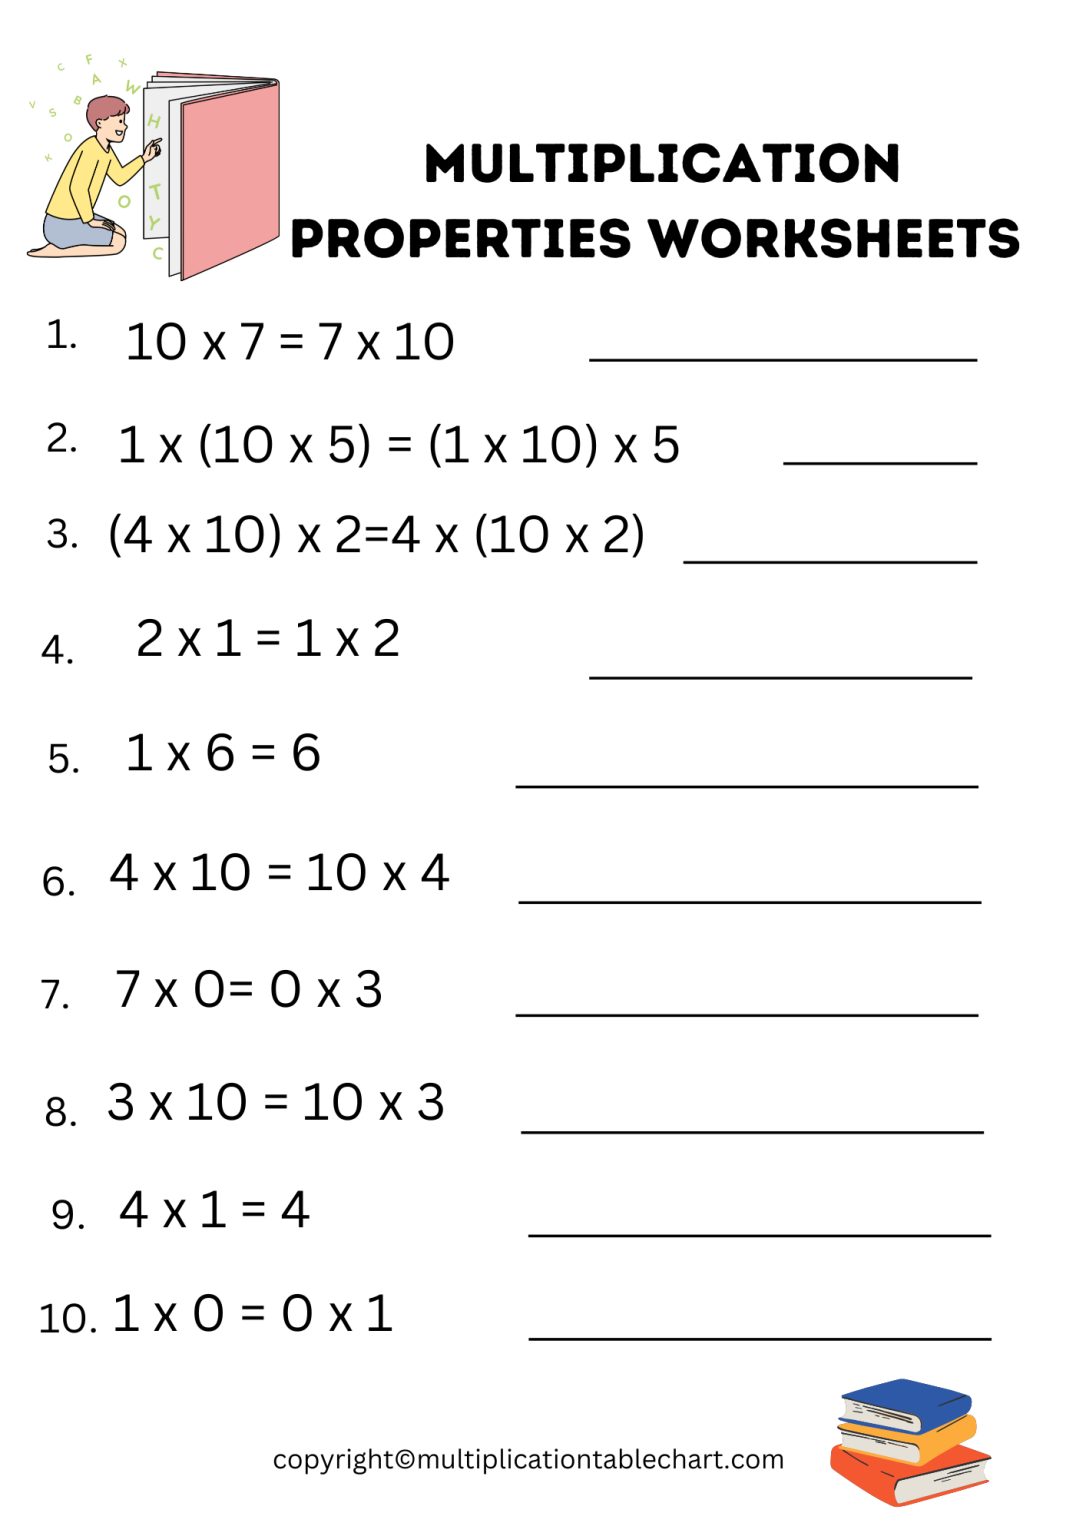 multiplication-properties-worksheets-printable-grade-3